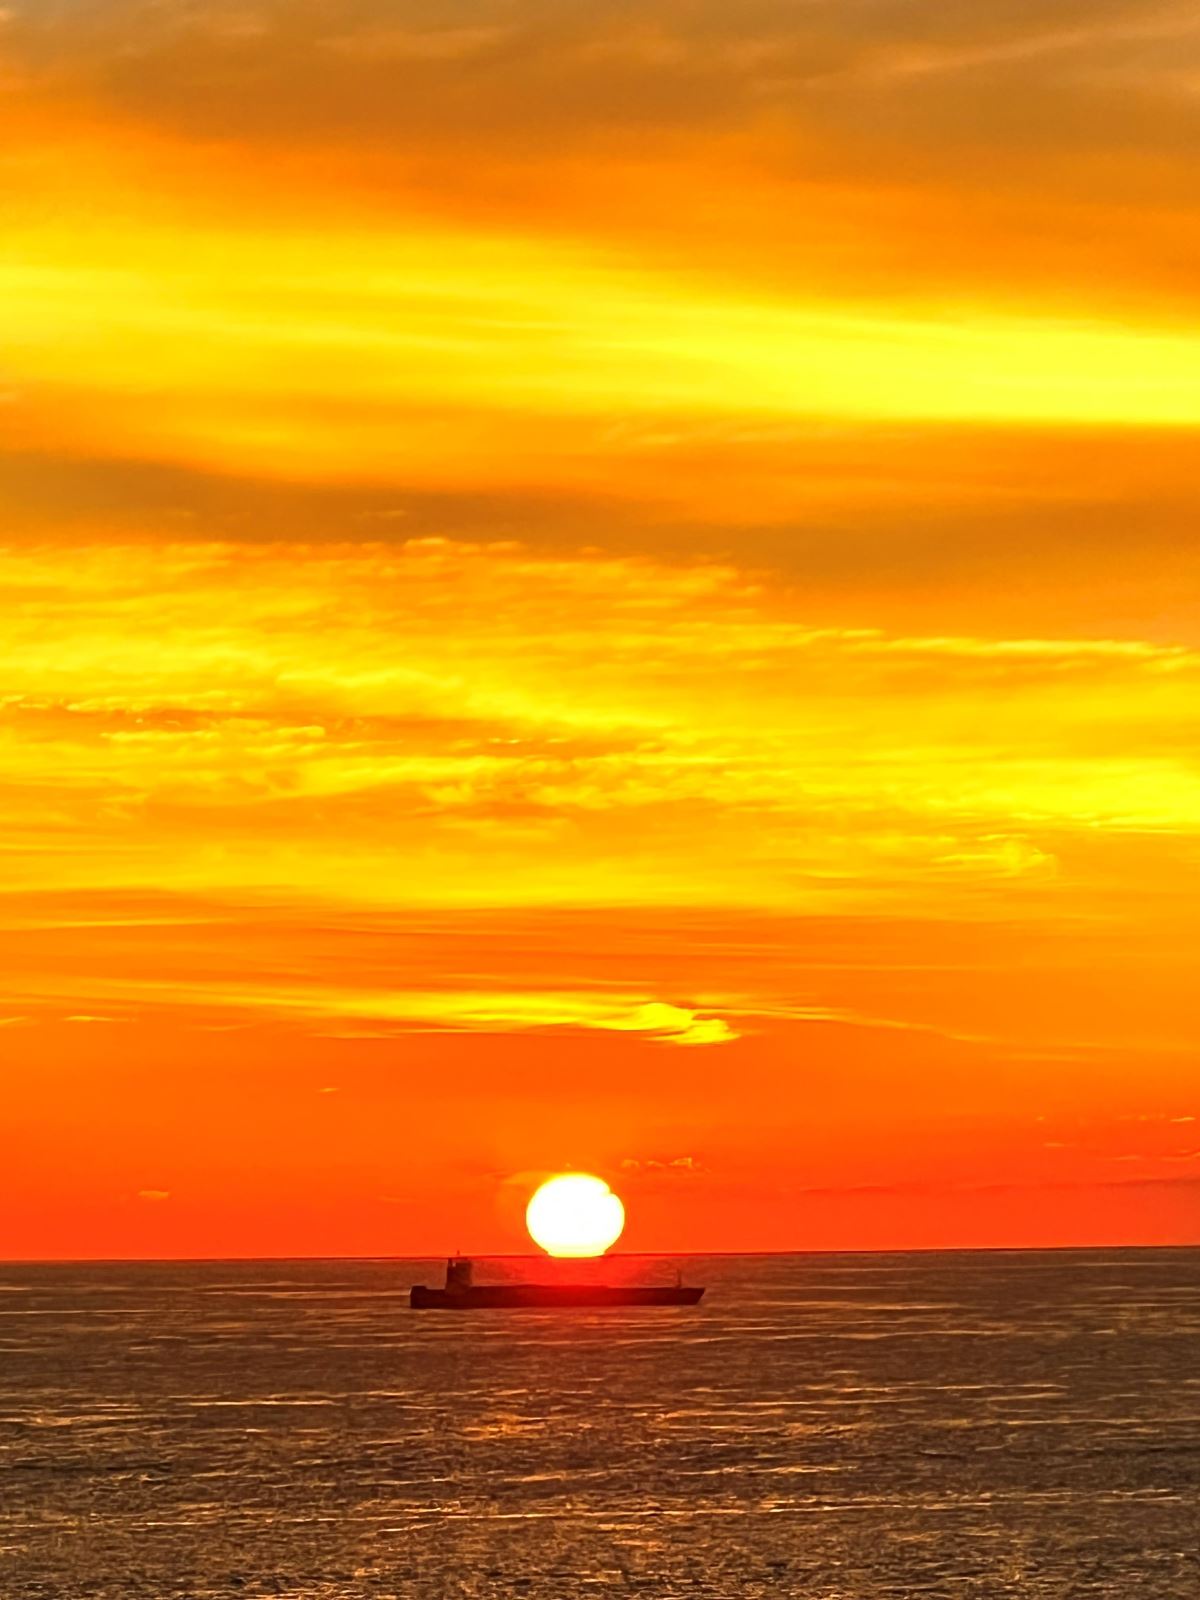 Sunset over ship.jpg